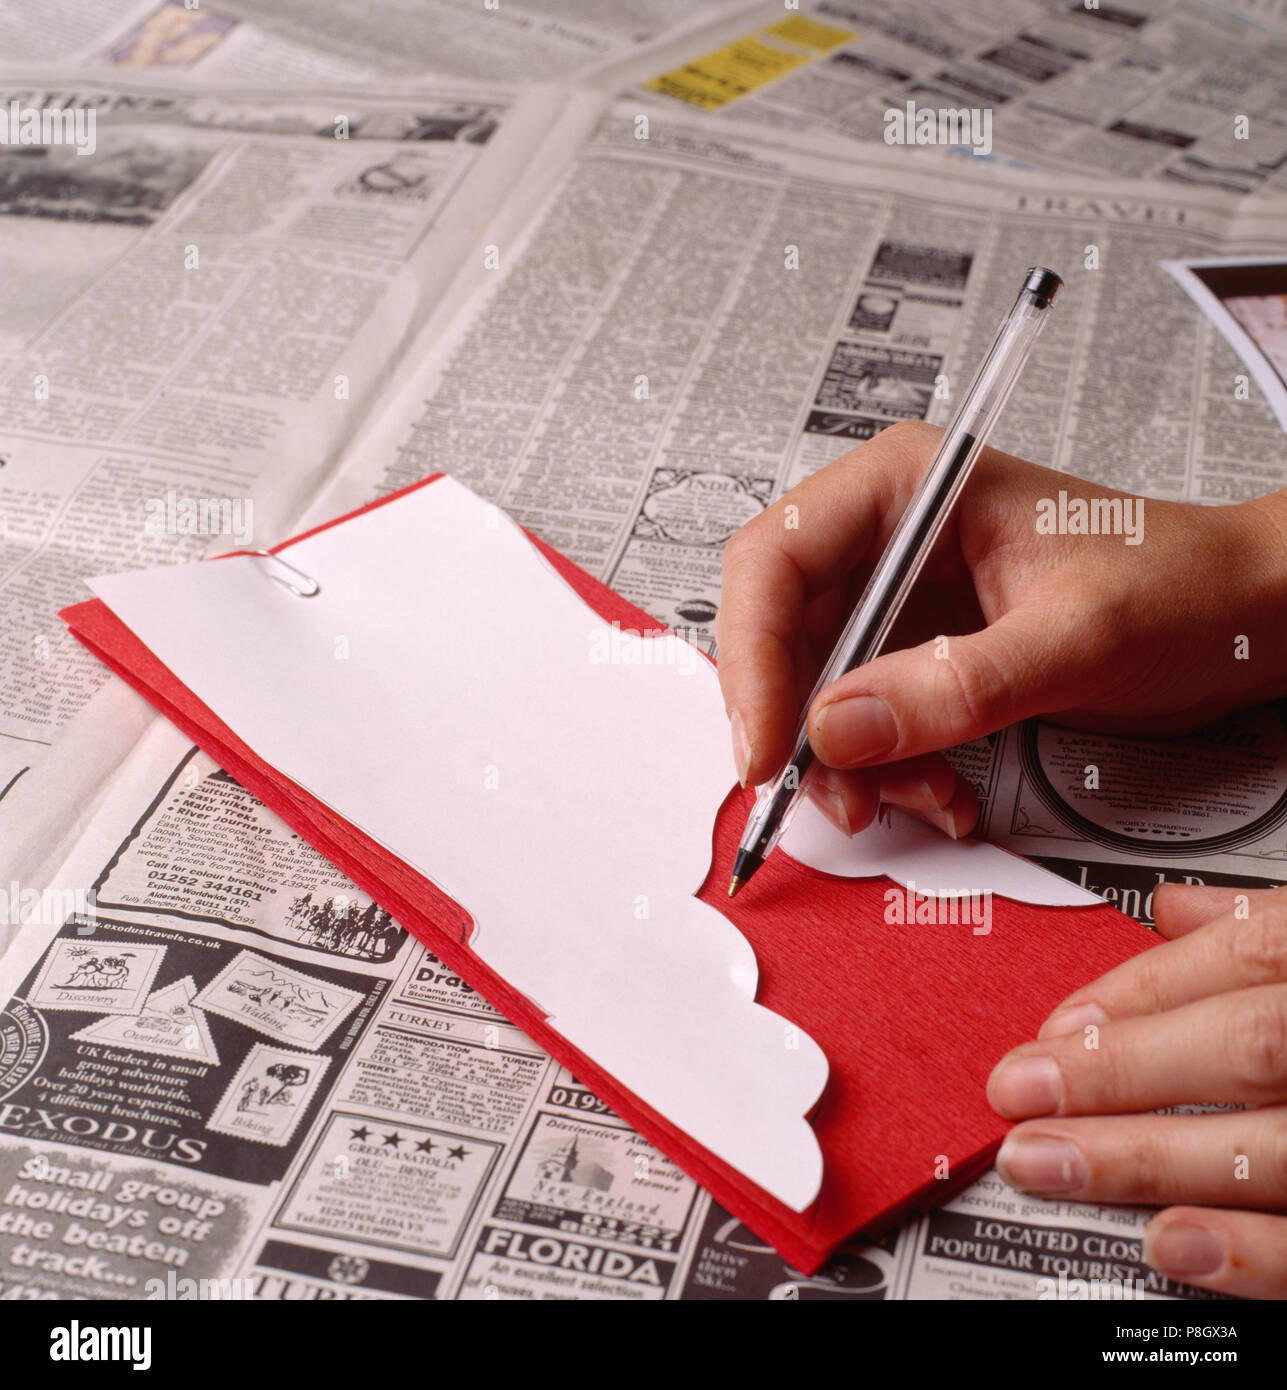 Close-up de manos utilizando un bolígrafo para dibujar alrededor tenplate blanco en papel crepé rojo SÓLO PARA USO EDITORIAL Foto de stock